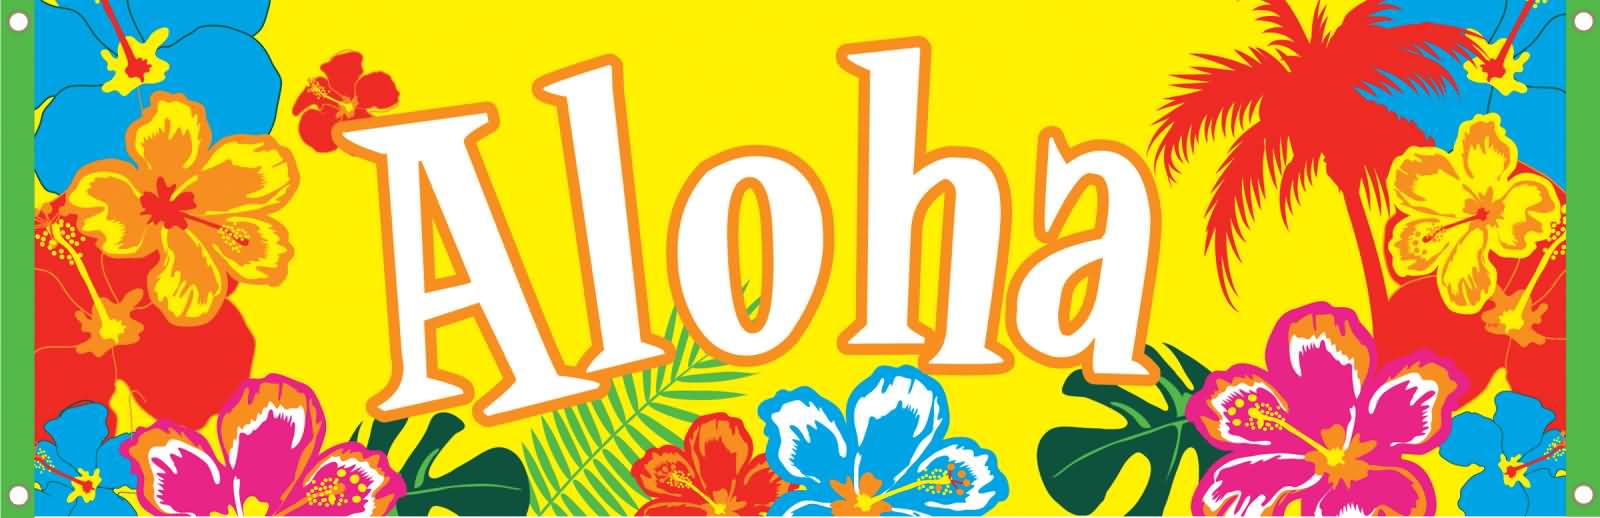 Aloha Clipart Image. ALOHA. A